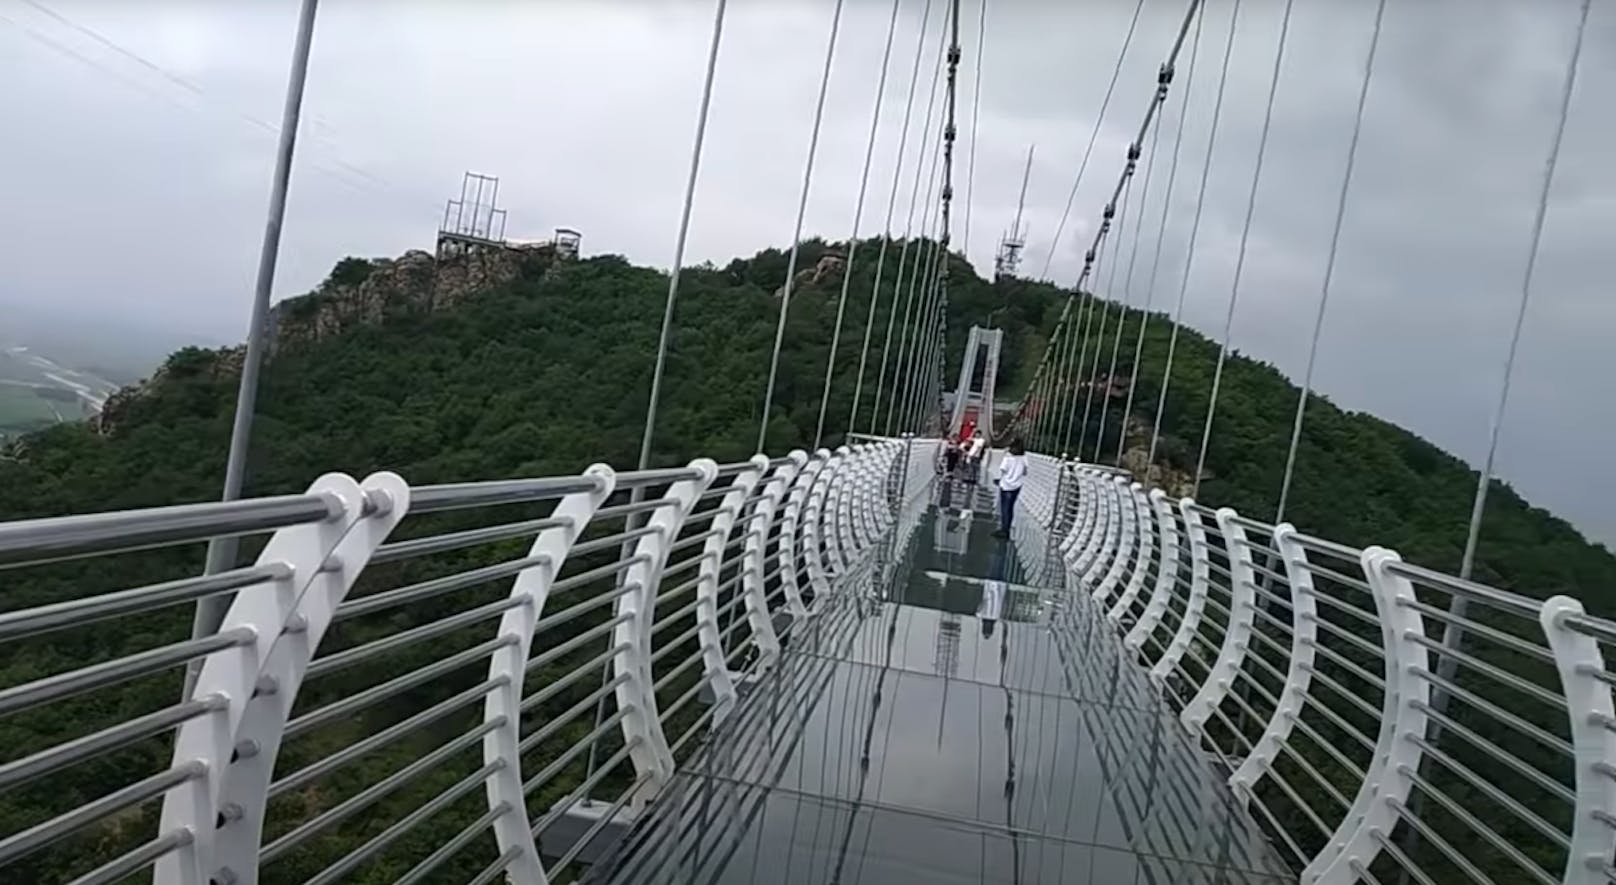 Der Glasboden dieser Brücke in China ist eingebrochen. Im Bild sieht man die Brücke, als der Glasboden noch ganz war.